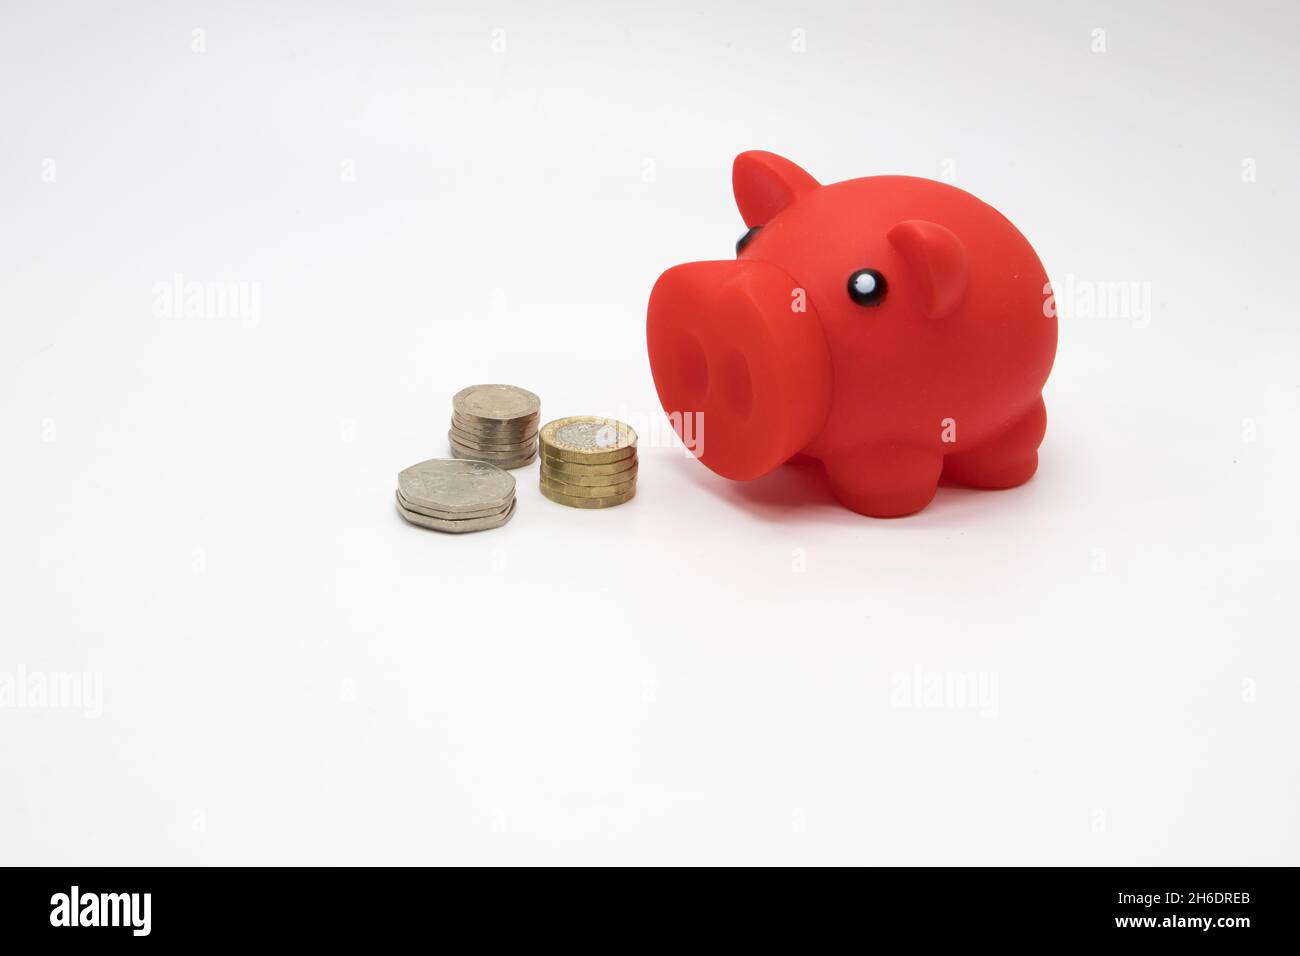 Geld sparen für einen regnerischen Tag. Sparschwein und Bargeld auf weißem Hintergrund Stockfoto